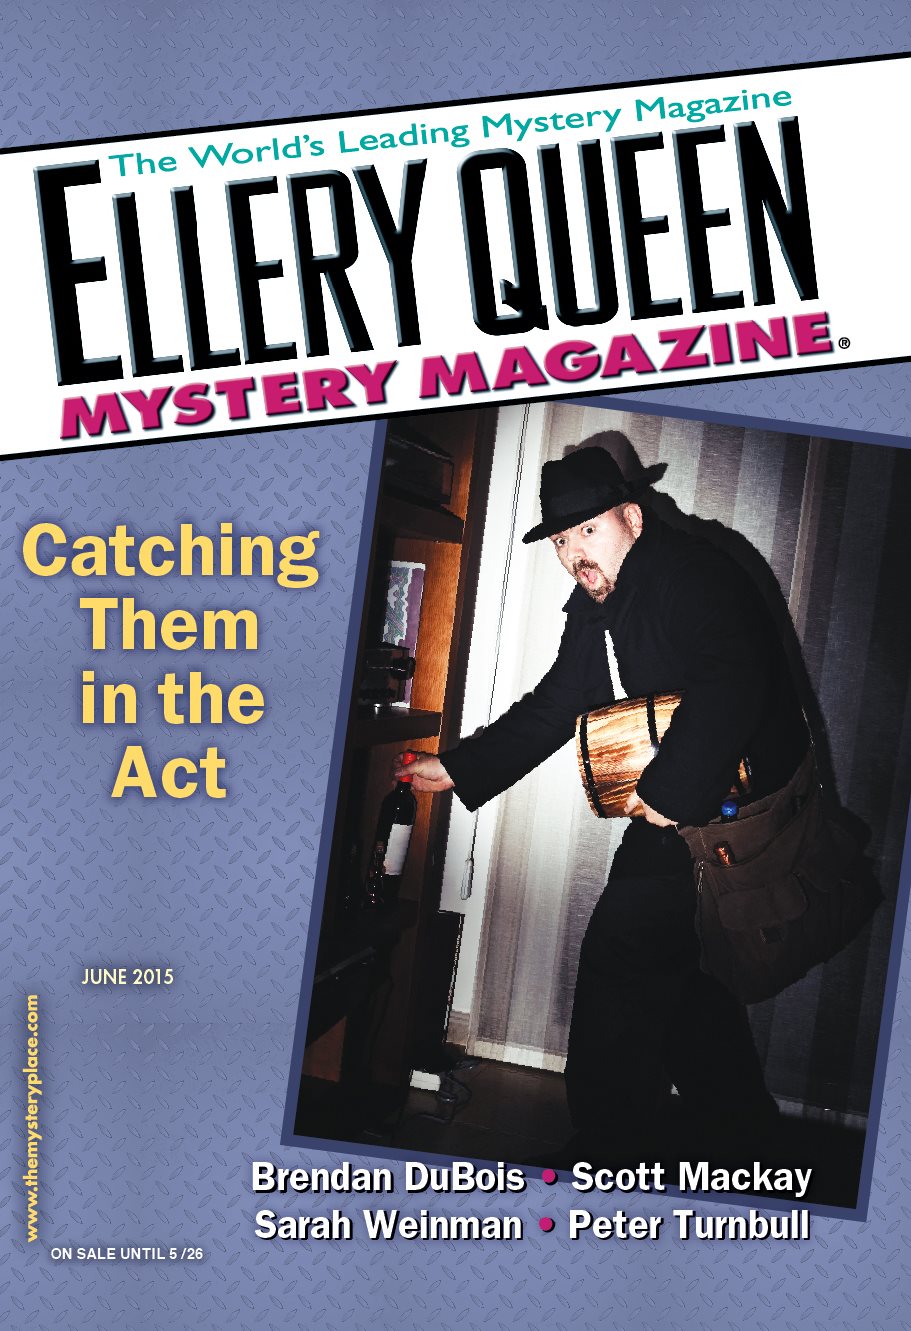 Cover-Ellery Queen